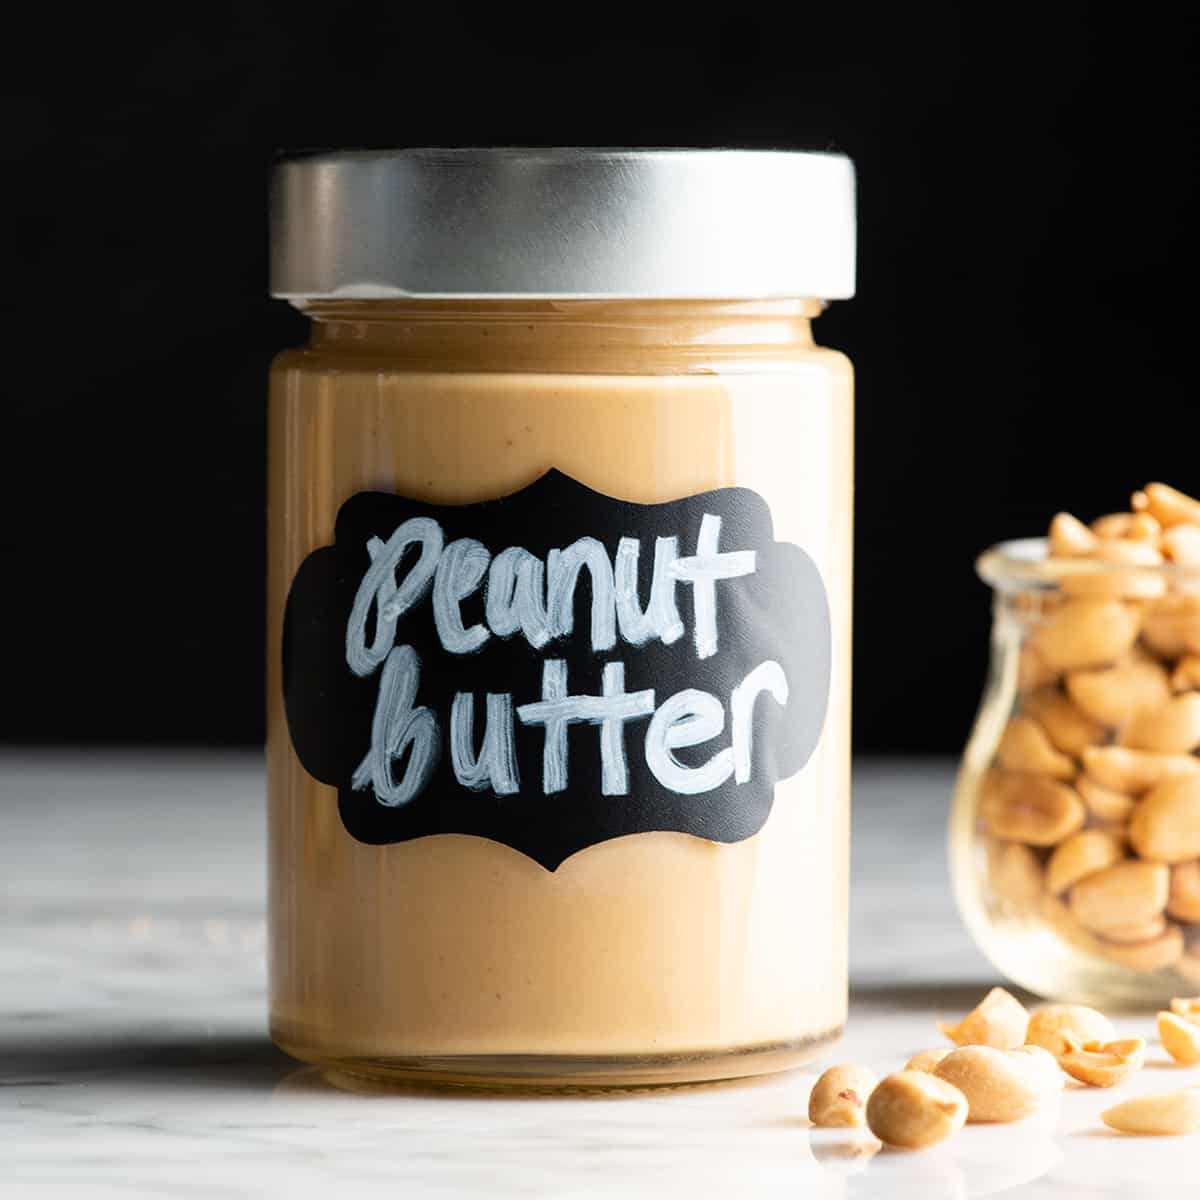 amazing health benefits of peanut butter | आप भी जानिए पीनट बटर से होने  वाले ढेरों फायदे के बारे में, वेट लॉस से लेकर पाचन तंत्र को मजबूत बना के  रखने में